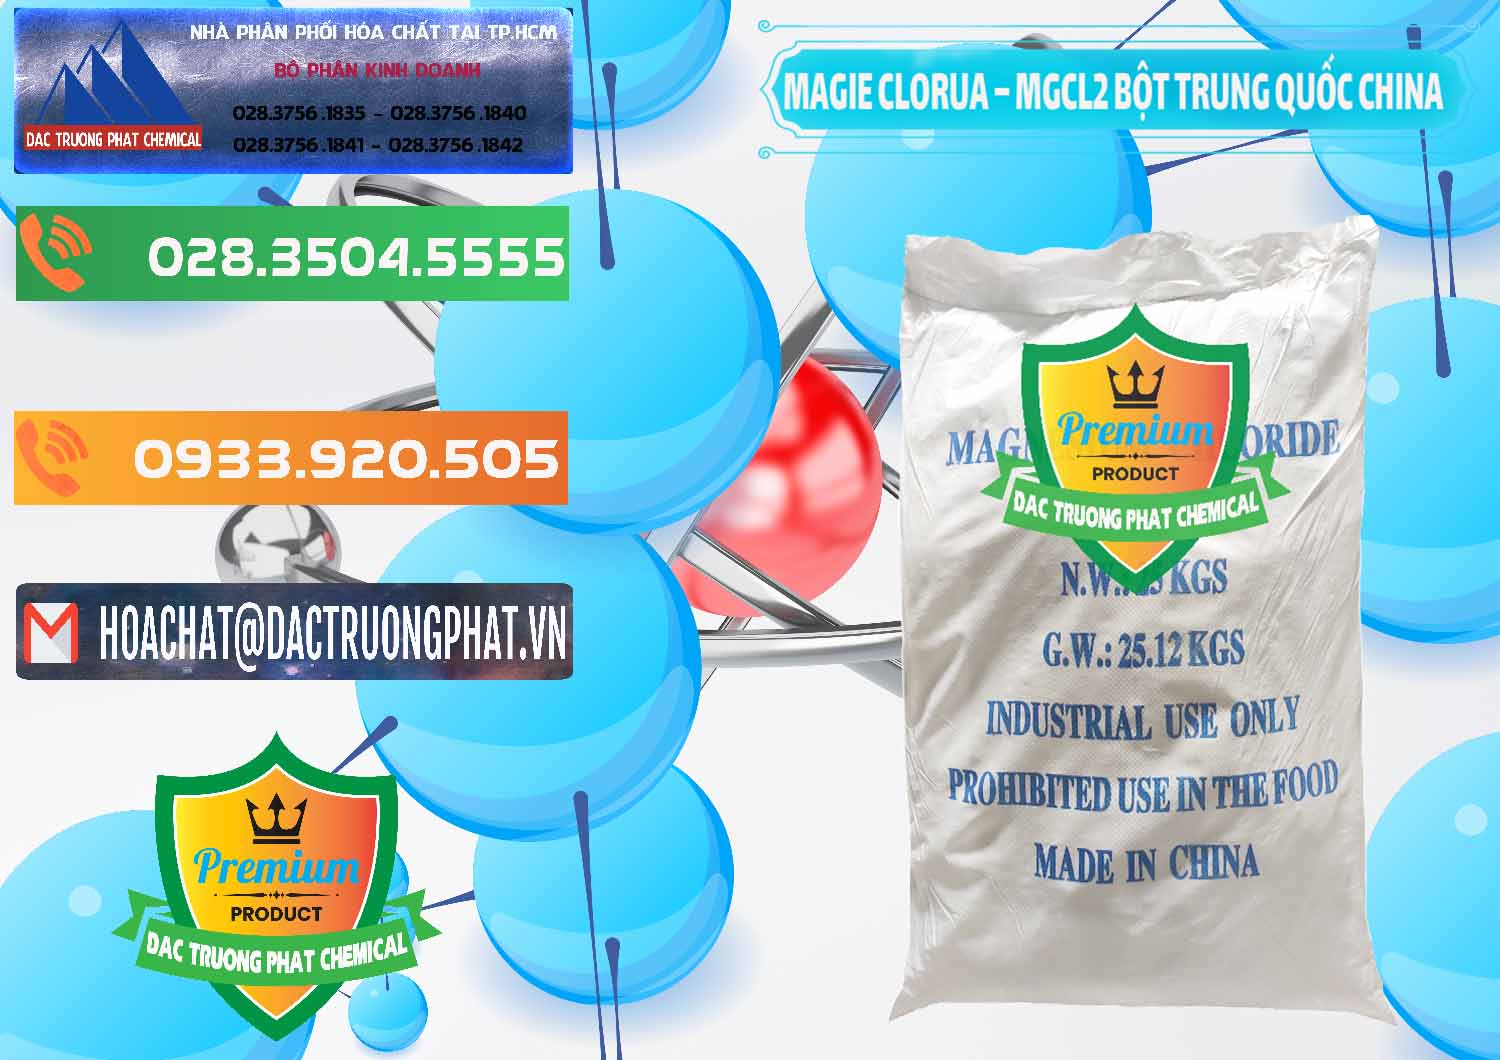 Nơi phân phối - bán Magie Clorua – MGCL2 96% Dạng Bột Bao Chữ Xanh Trung Quốc China - 0207 - Công ty nhập khẩu _ cung cấp hóa chất tại TP.HCM - hoachatxulynuoc.com.vn